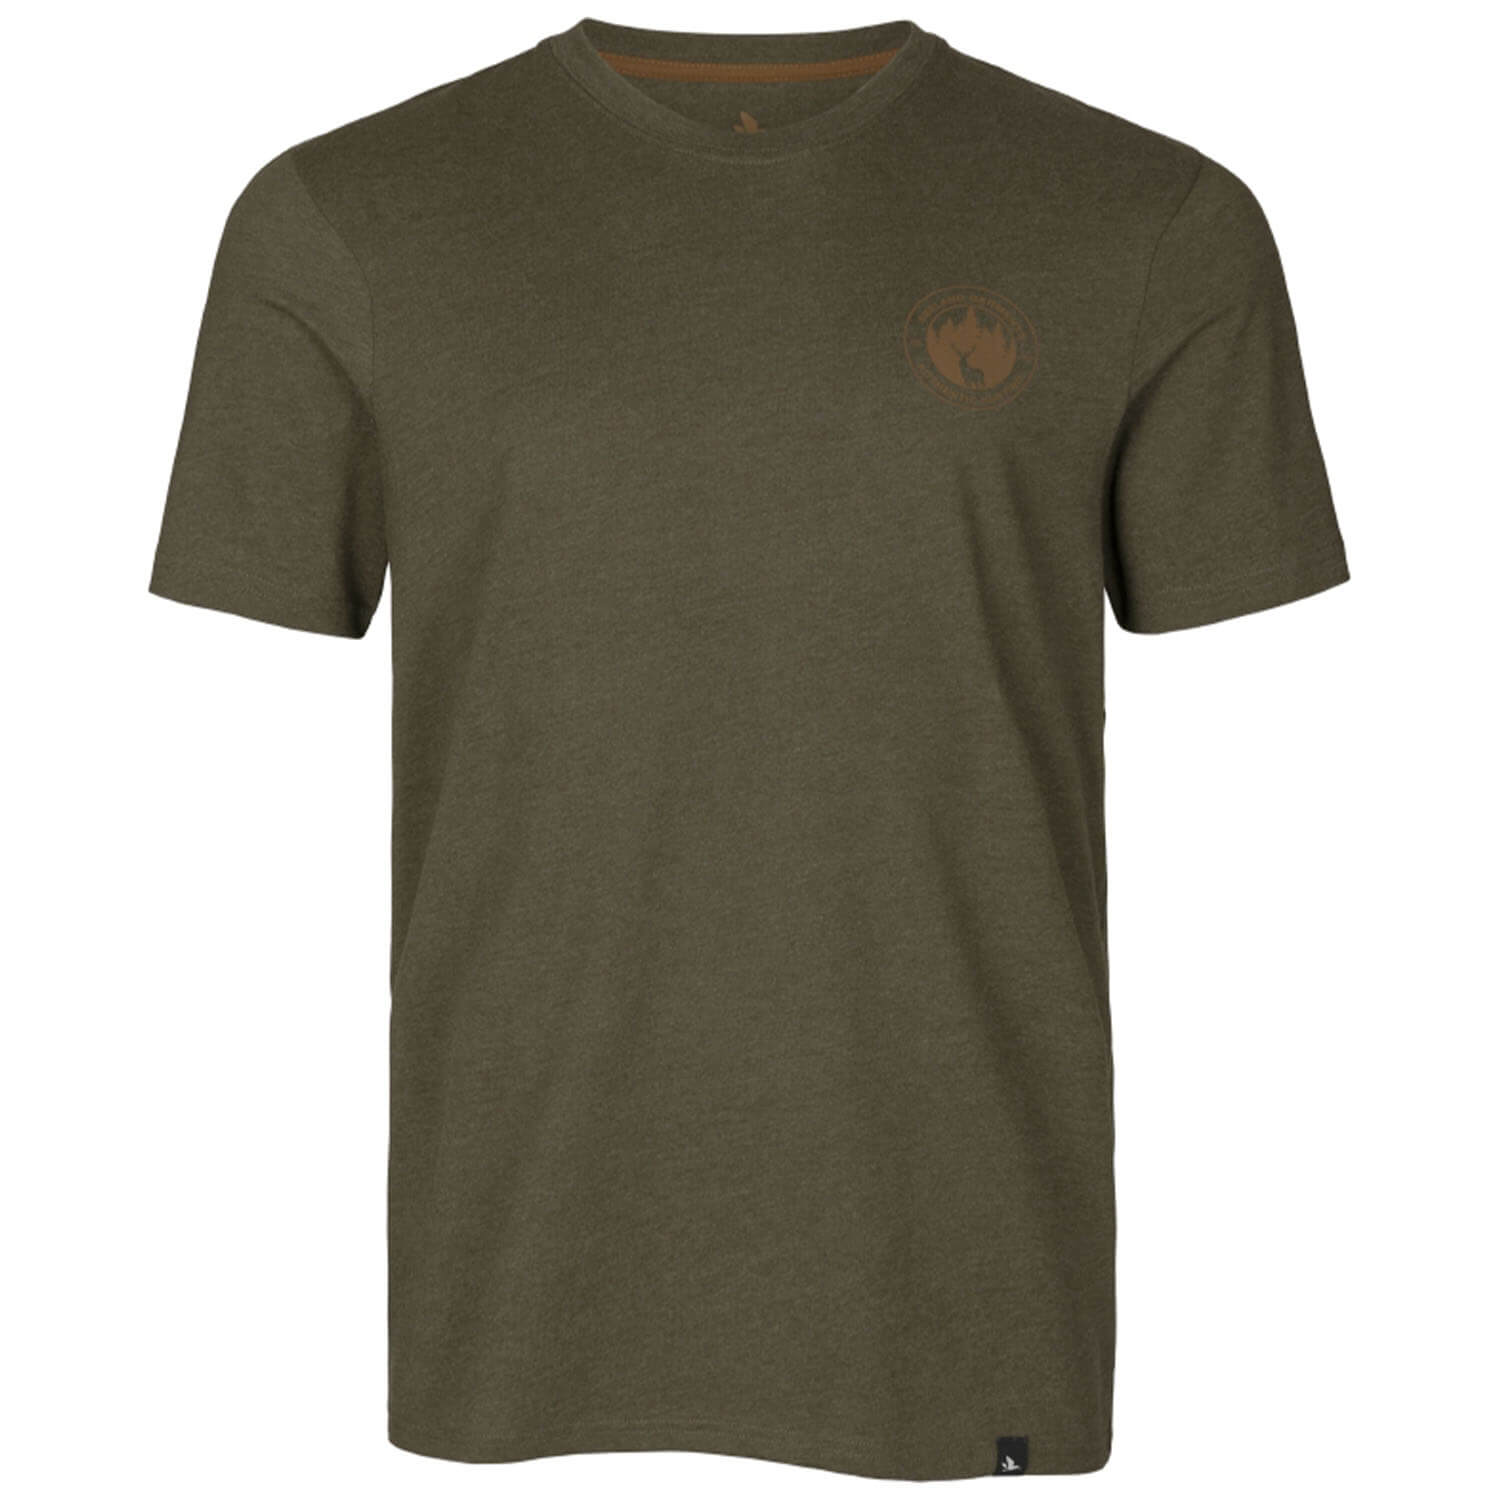 Seeland T-Shirt Saker (Pine Green Melange) - Shirts